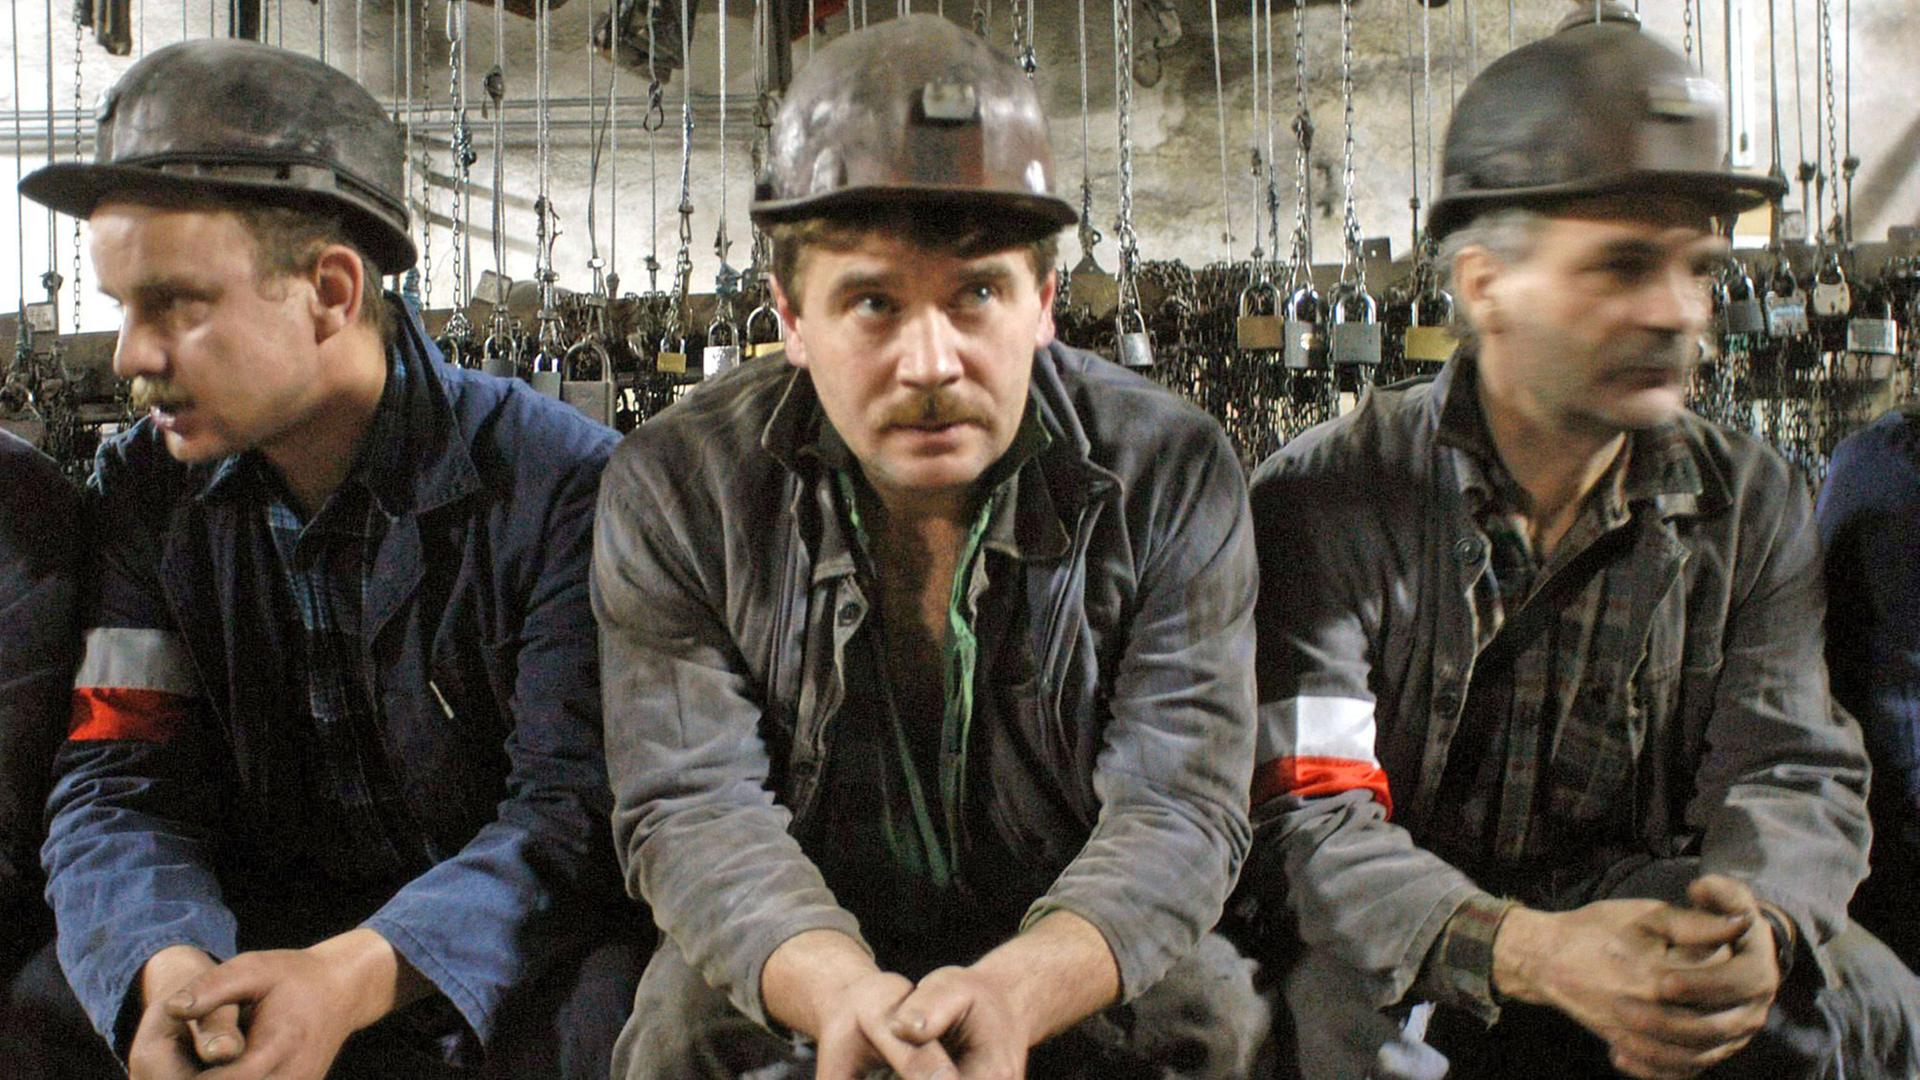 Bergarbeiter einer Kohlenmine, die geschlossen werden soll, starten im polnischen Bytom am 17.11.2003 einen 24-stündigen Warnstreik gegen den Verlust ihrer Arbeitsplätze.